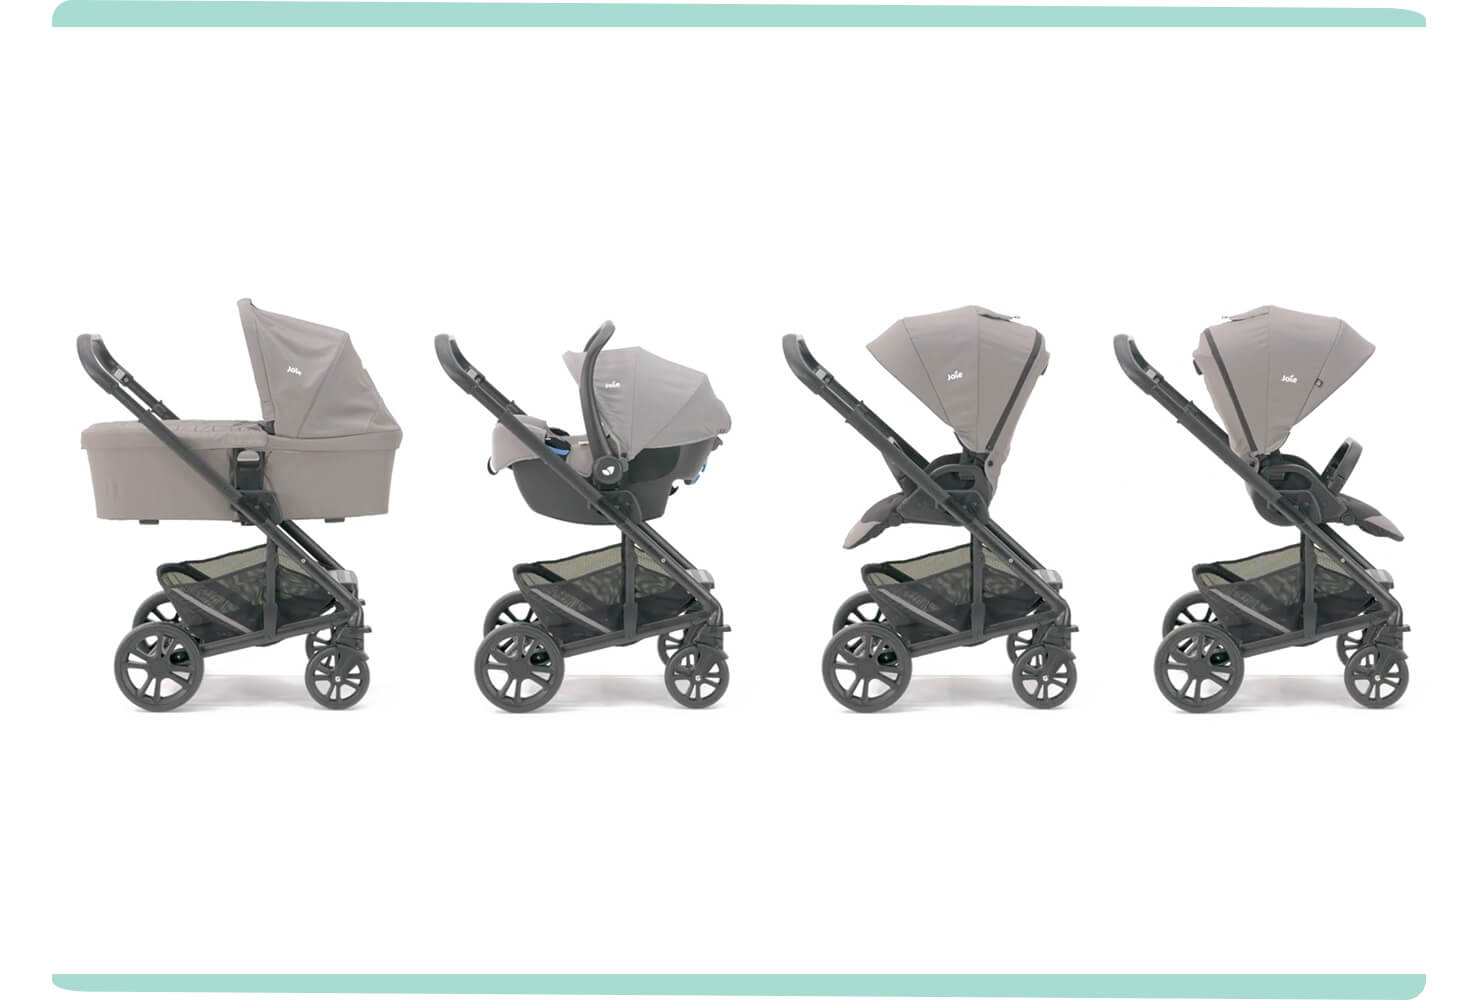 Die vier Modi des Chrome Kinderwagens in Hellgrau dargestellt. Von links nach rechts: Babywanne, Babyschale, Kinderwagensitz mit Blickrichtung zu den Eltern, Kinderwagensitz mit Blickrichtung zur Welt.